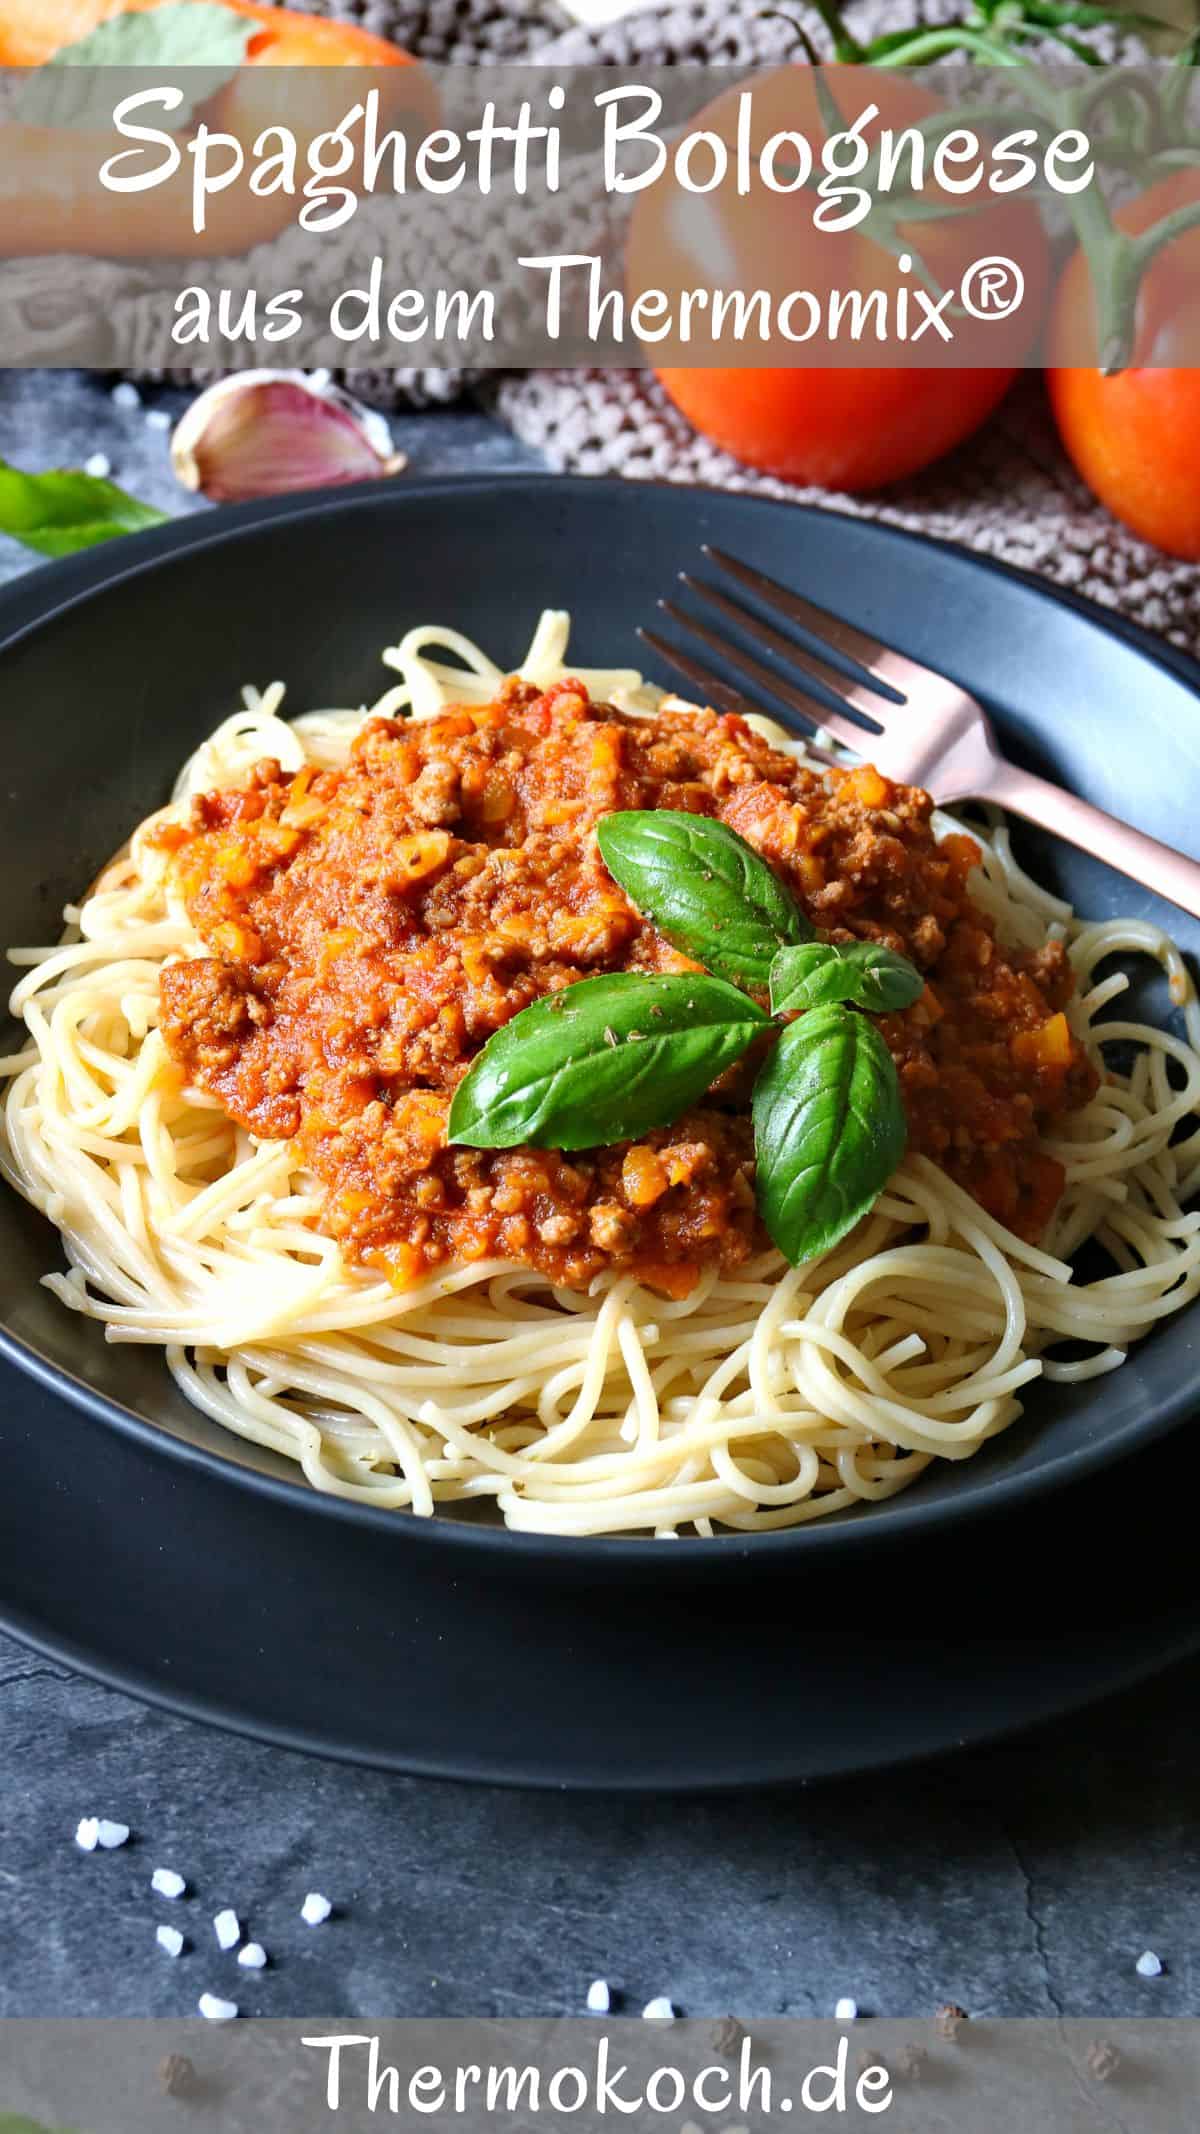 Ein dunkler, tiefer Teller mit Spaghetti Bolognese, garniert mit Basilikumblättern.